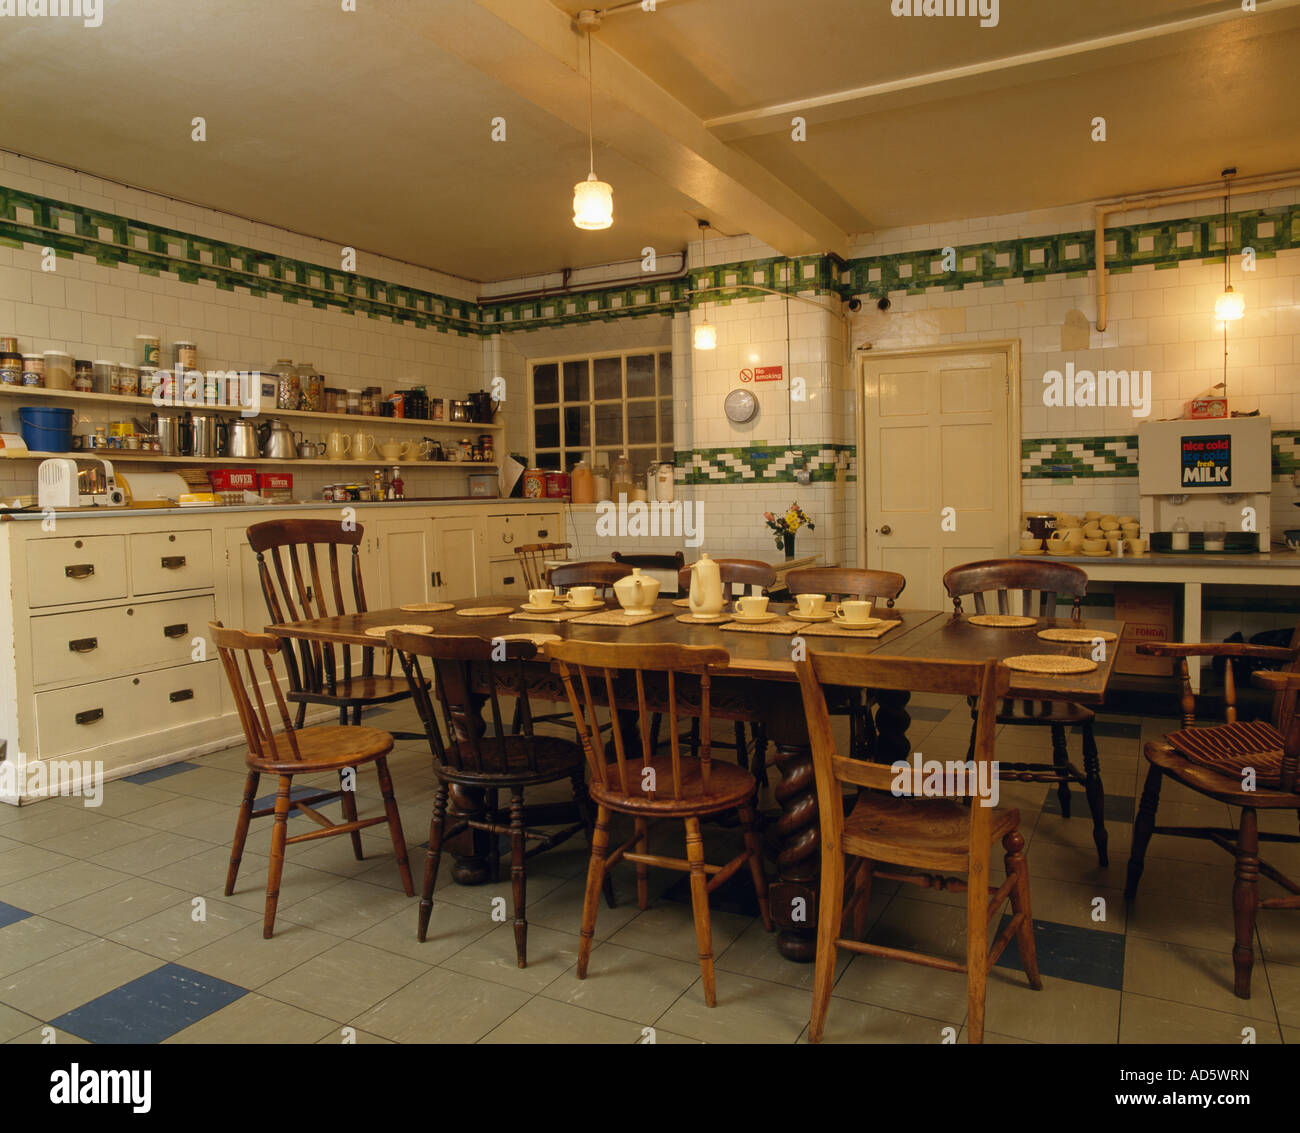 Großer Holztisch und Stühle in alten altmodischen Keller Küche mit weißen  und grünen Fliesenwand Stockfotografie - Alamy